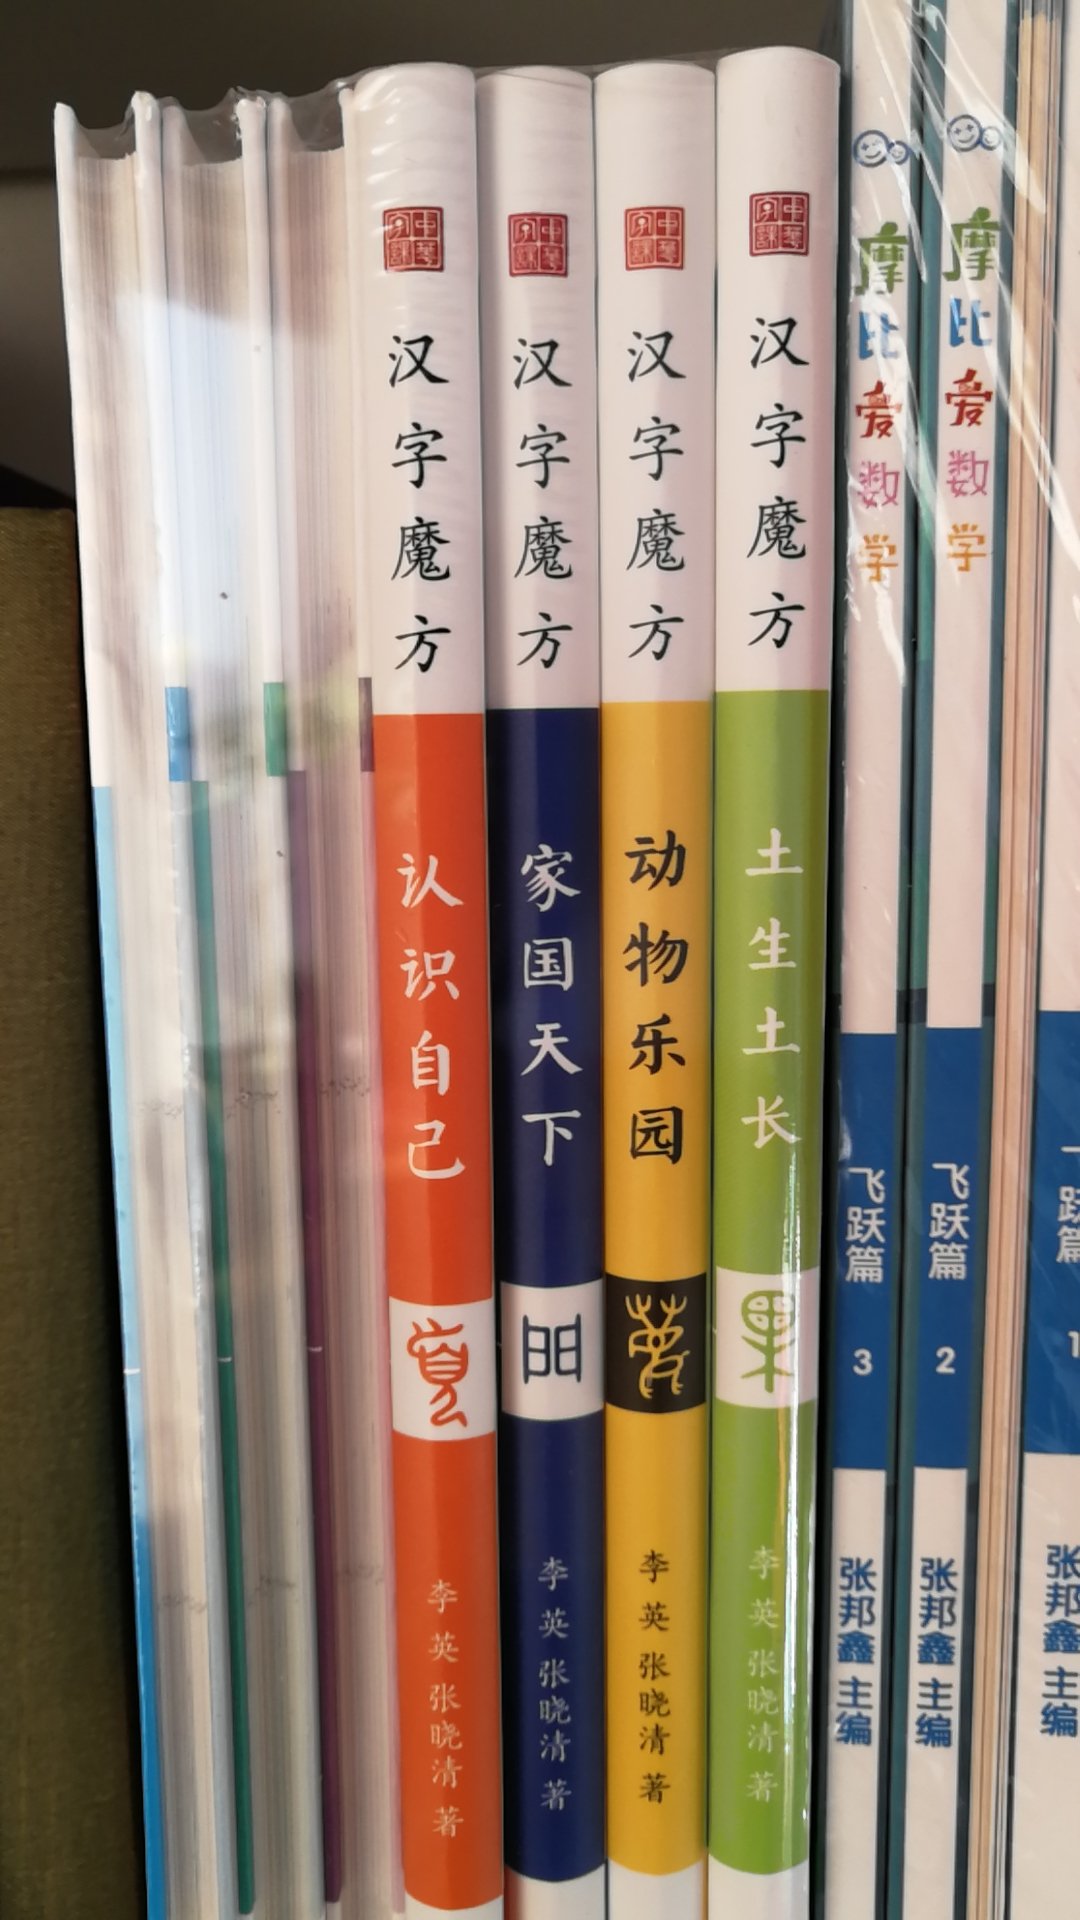 抢到这套书太不容易了，配套的动画太好了，文字溯源，深入讲解每个汉字